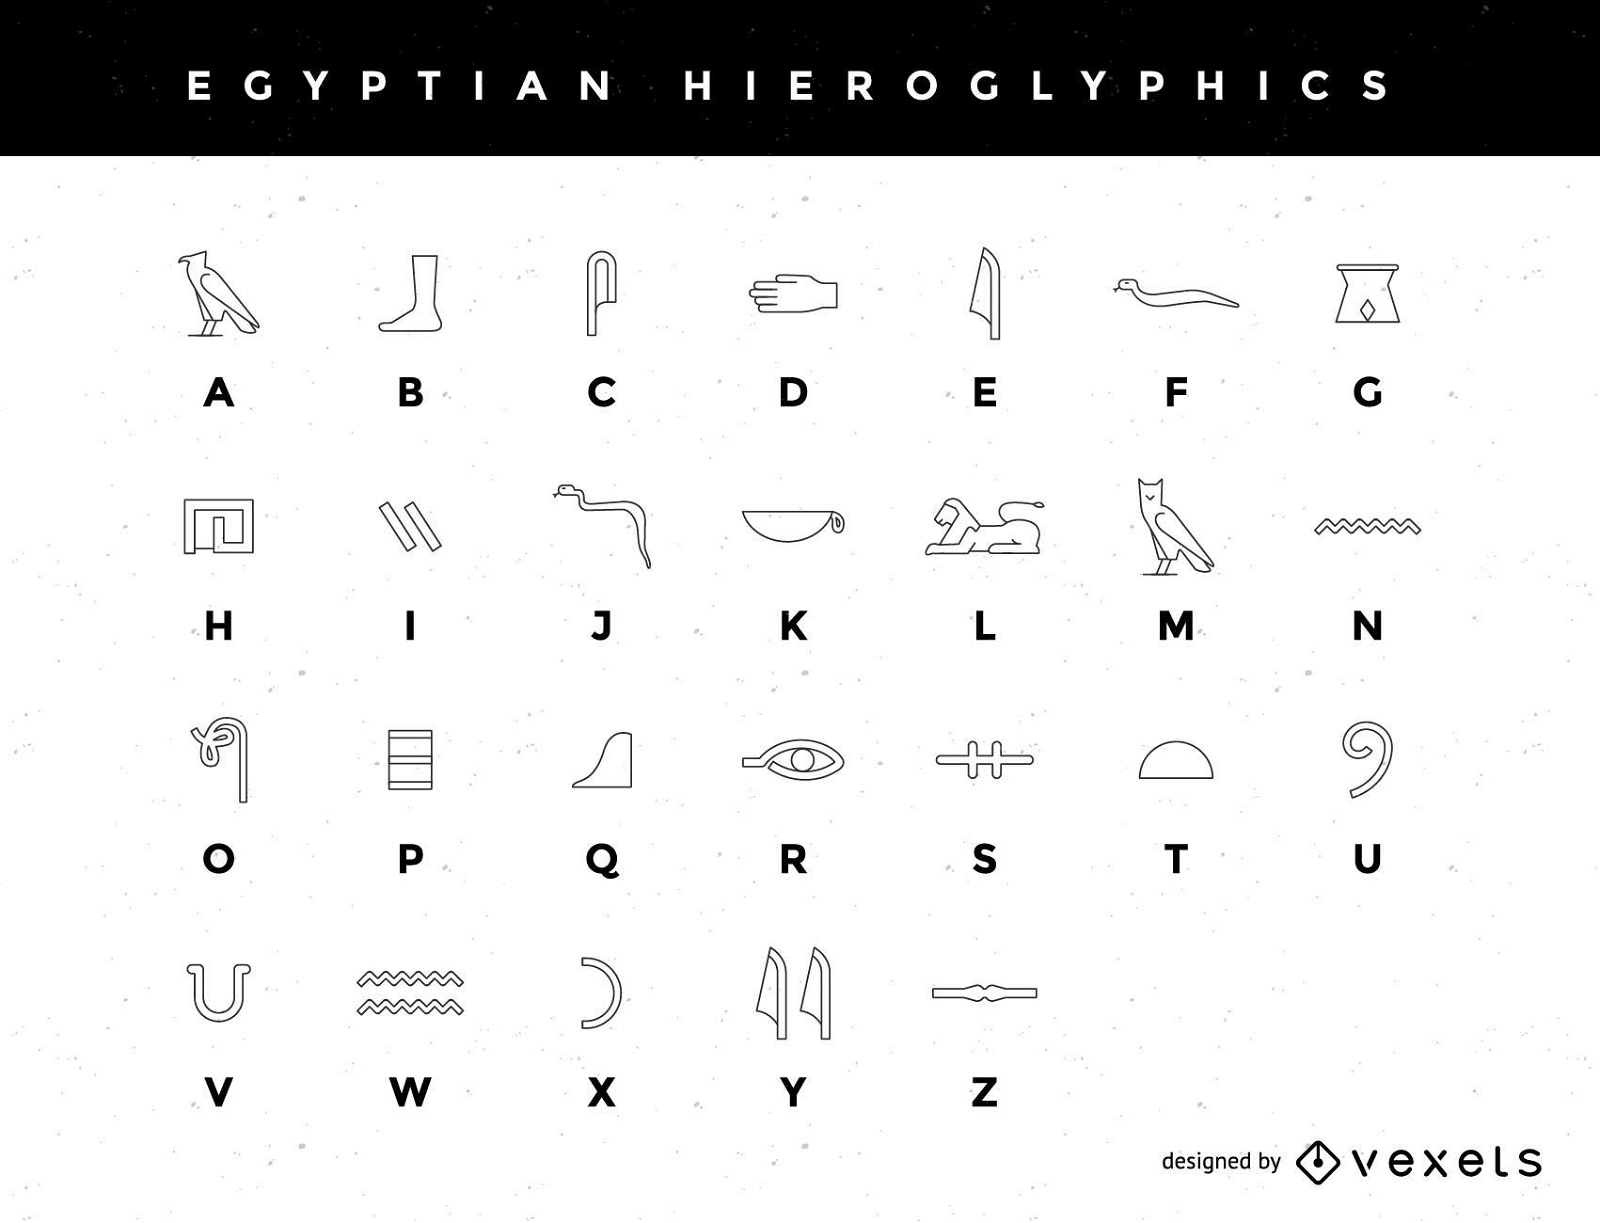 Ein stilisiertes ?gyptisches Hieroglyphenalphabet